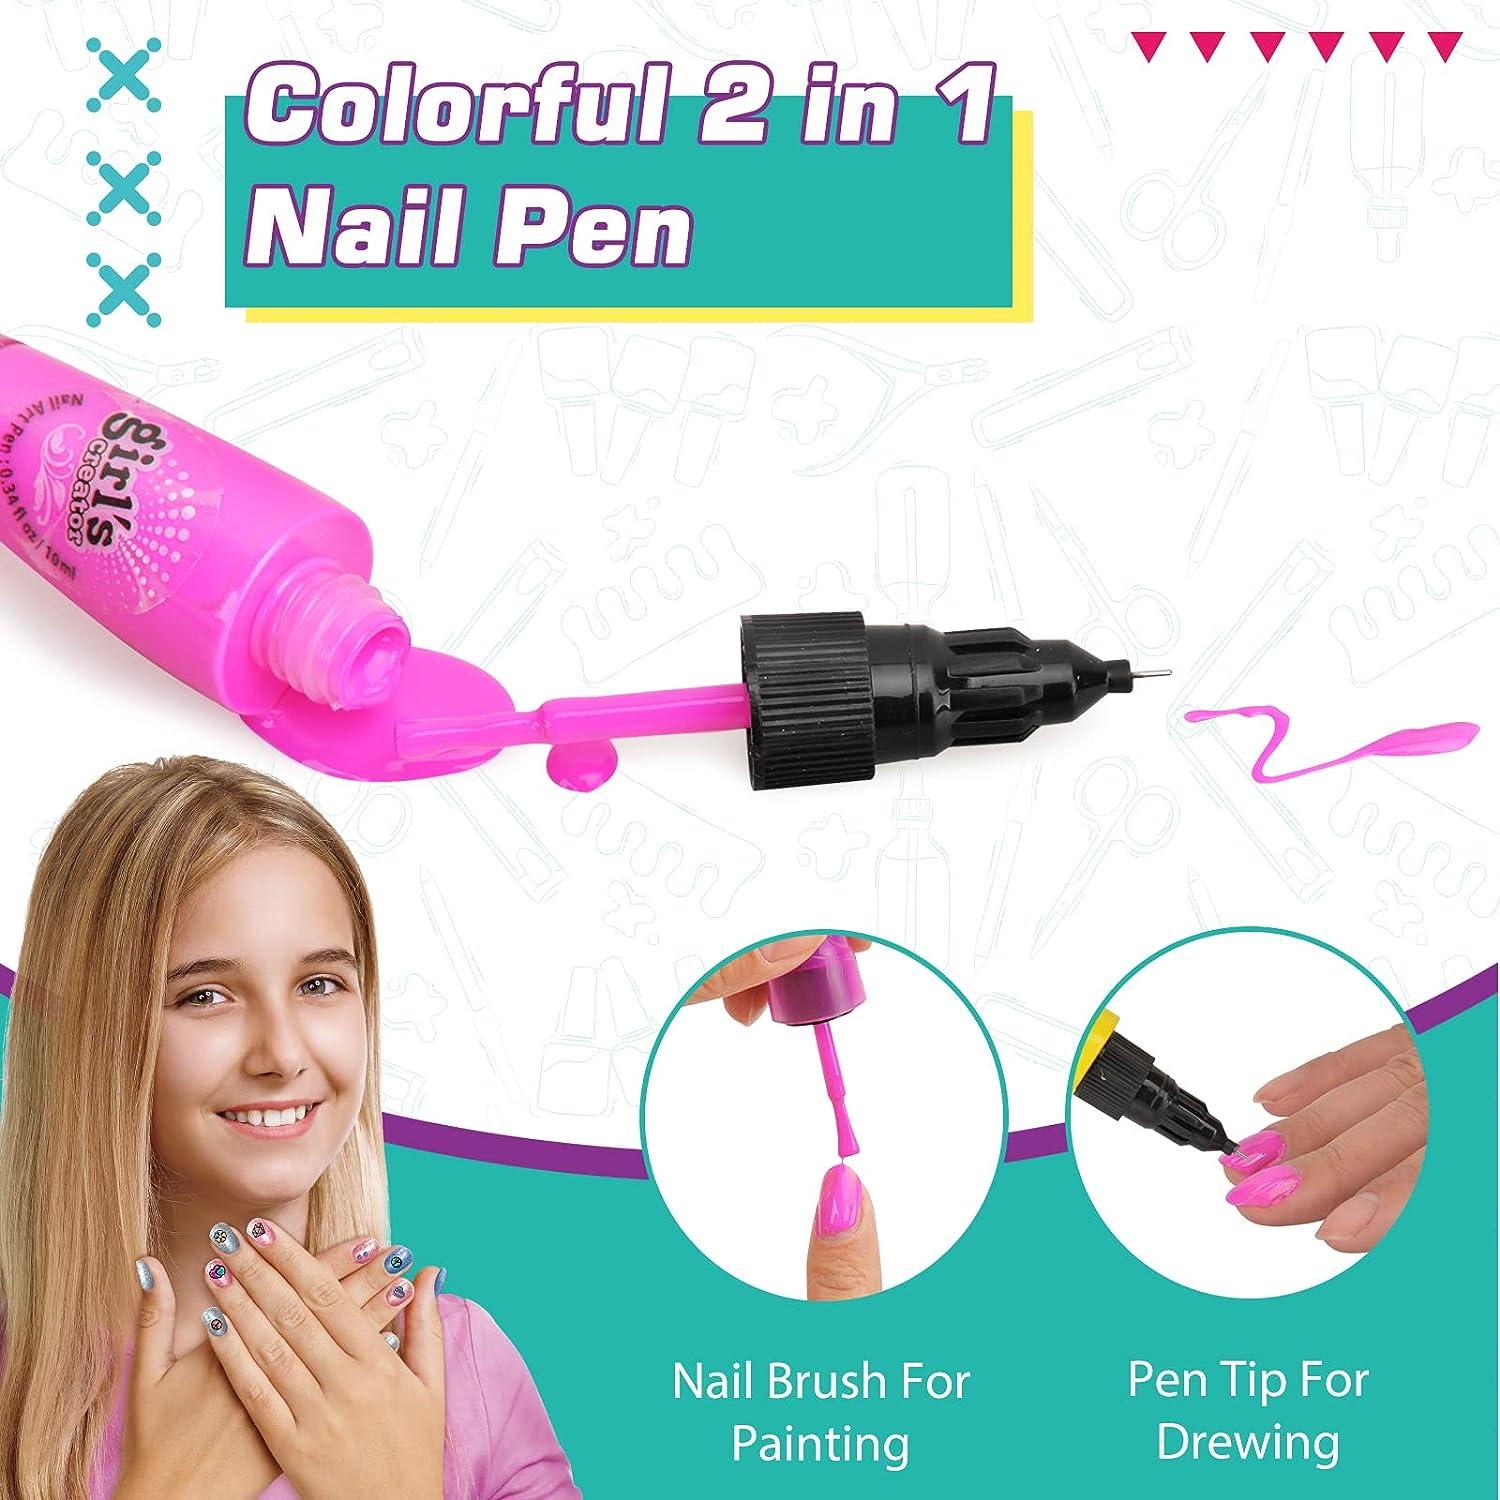 Nail Art Kit For Girls Kids Nail Polish Play Set With Nail Dryer